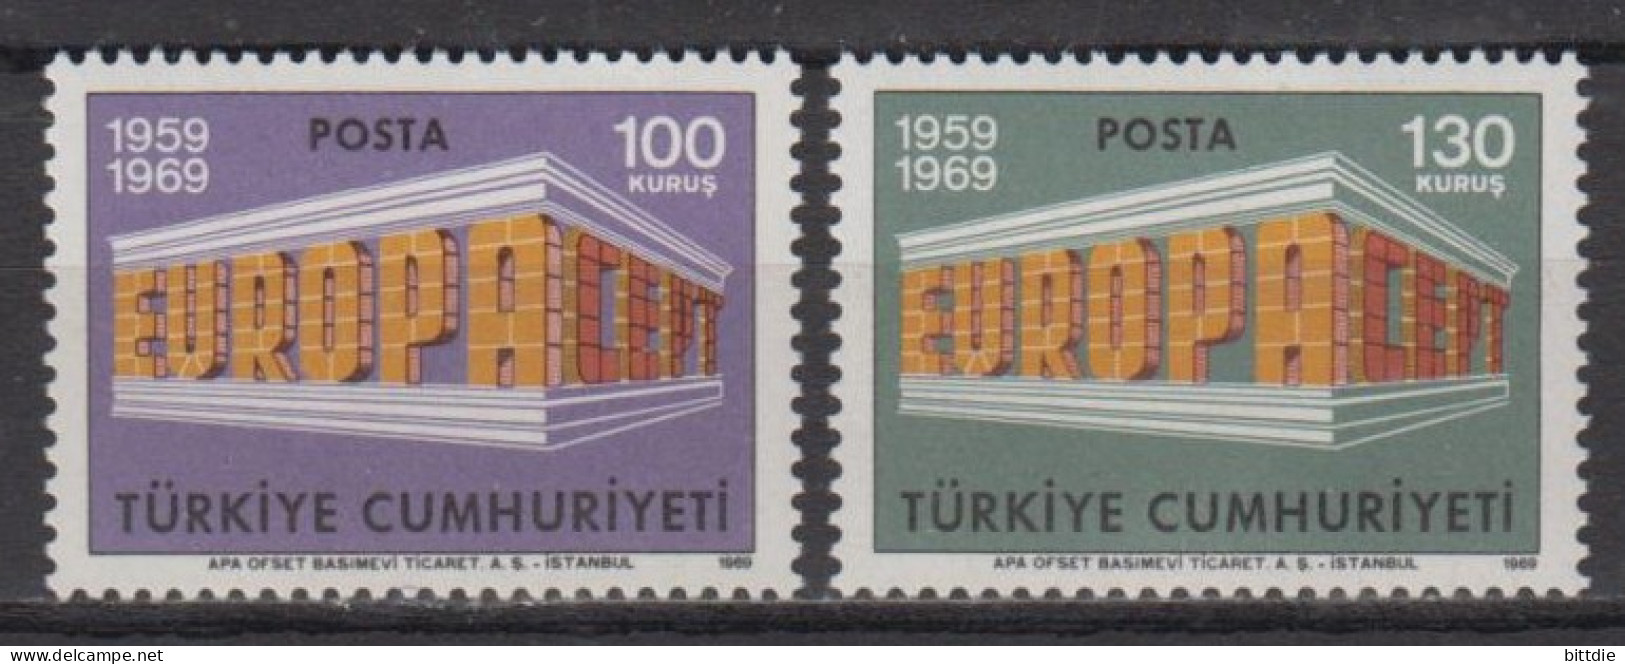 Europa/Cept , Türkei  2124/25 , Xx  (S 1749) - 1969